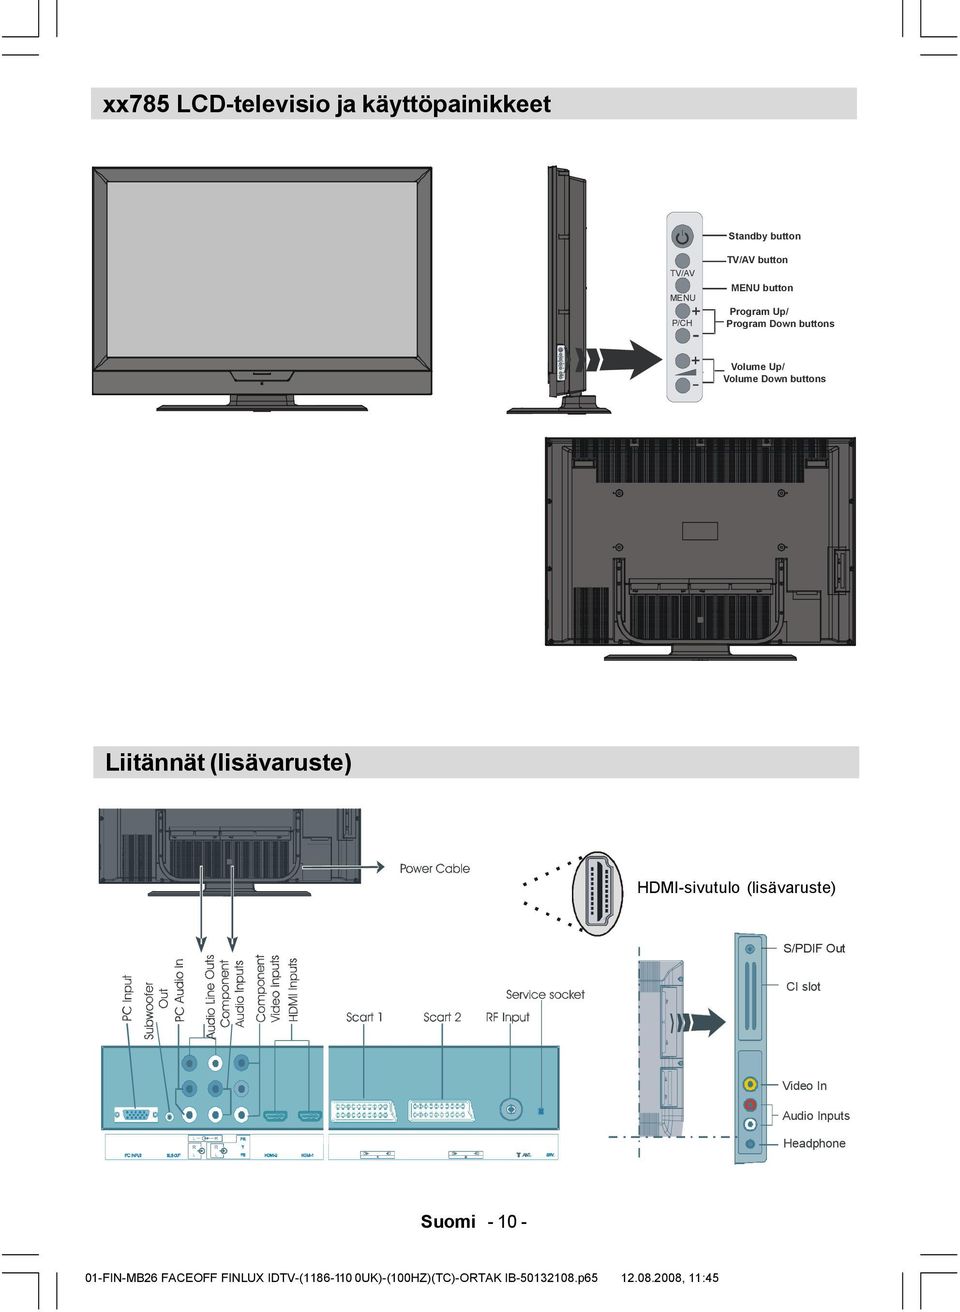 Liitännät (lisävaruste) HDMI-sivutulo (lisävaruste) S/PDIF Out CI slot Video In Audio